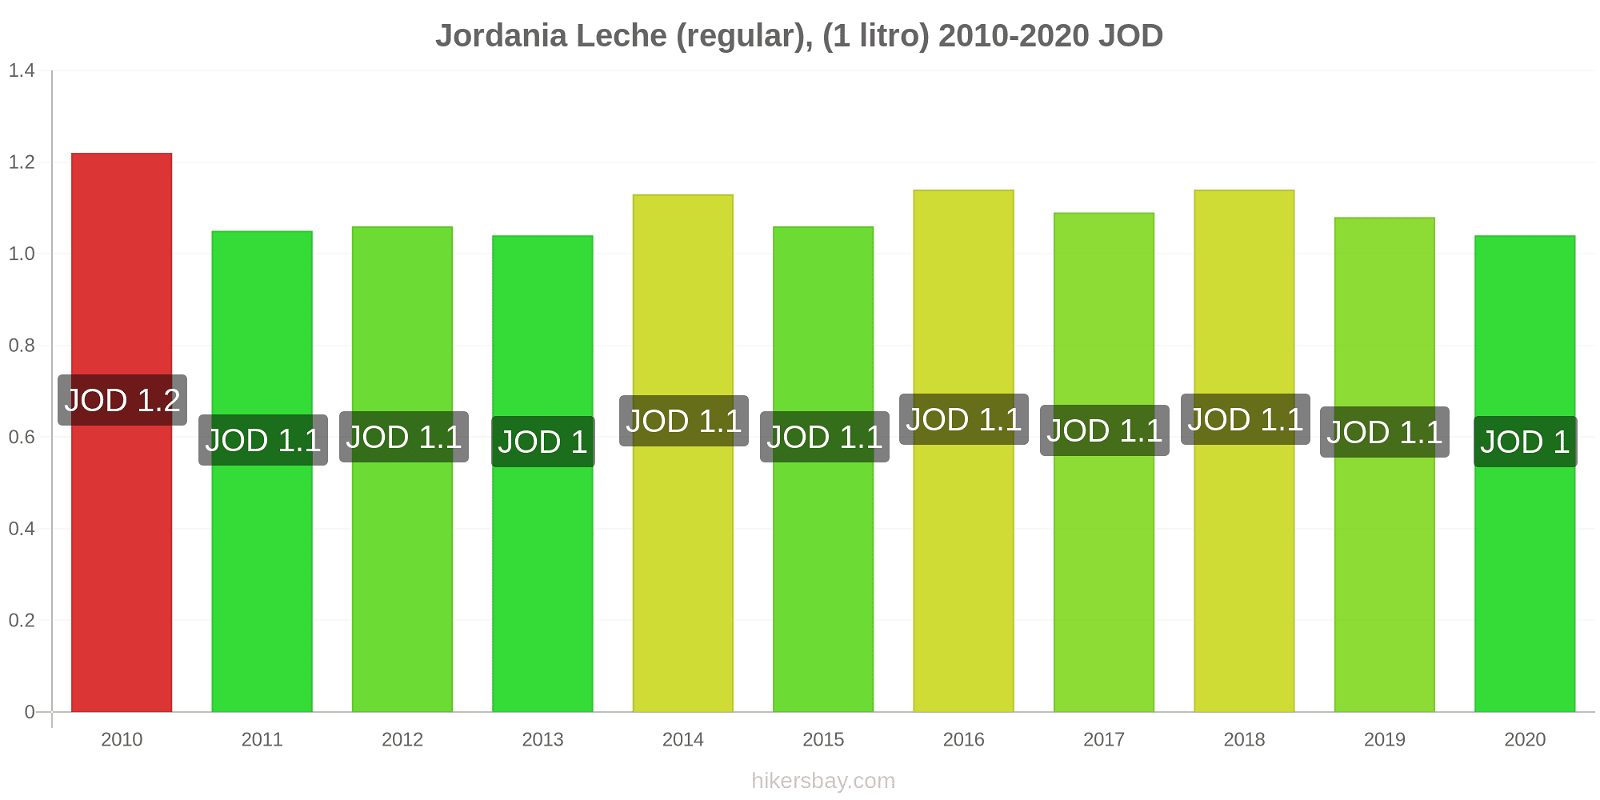 Jordania cambios de precios Leche (Regular), (1 litro) hikersbay.com